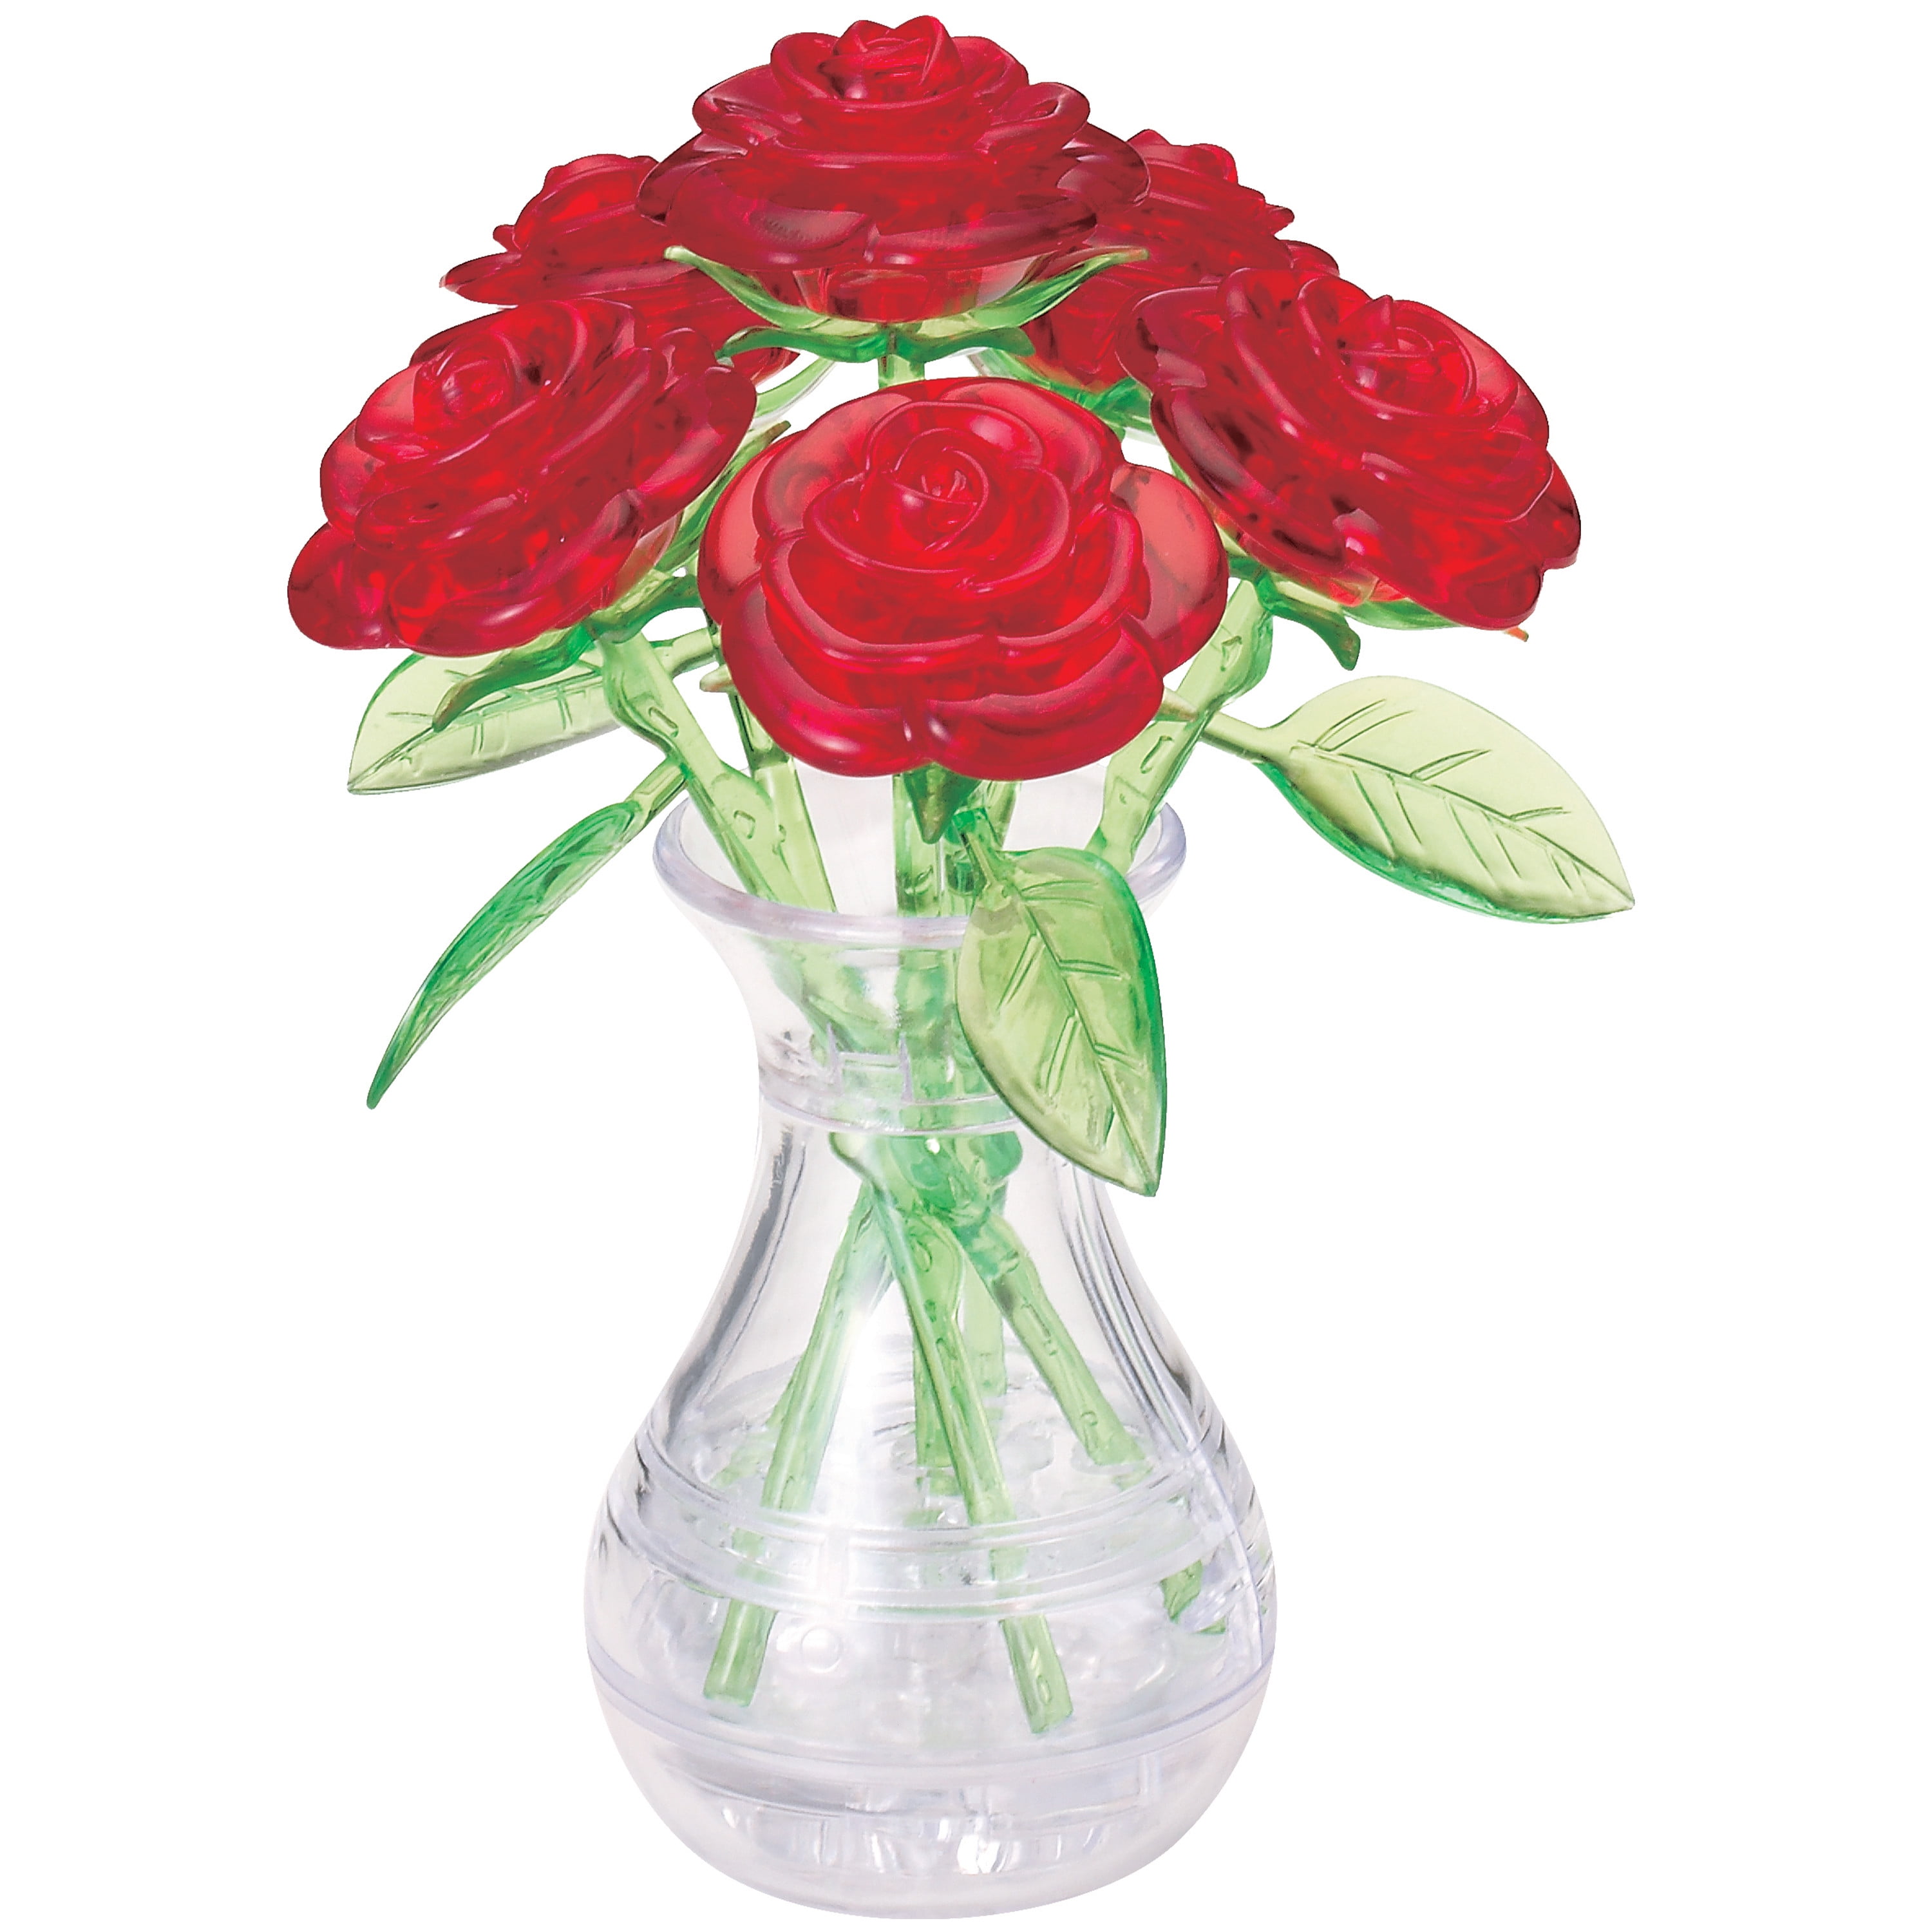 PUZZLE 3D RAVENSBURGER 12050 Vase Eulen Ravensburger 3D puzzle Flower Vase 